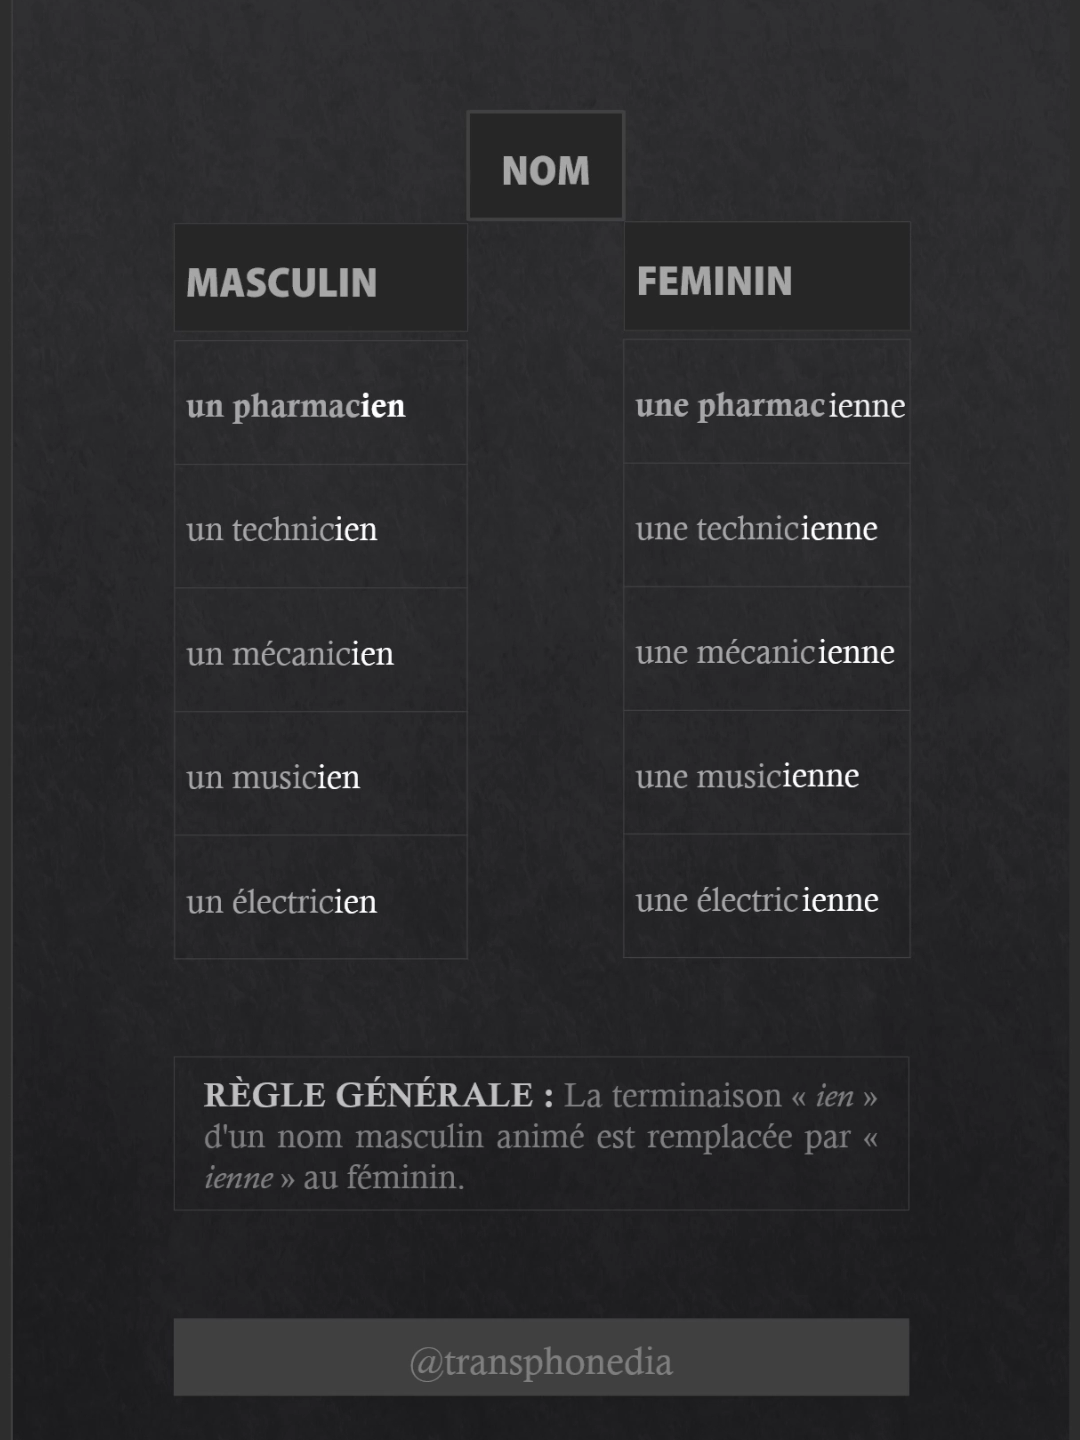 Le féminin des noms masculins animés : ien-ienne | Learn french easily #France #French #Paris